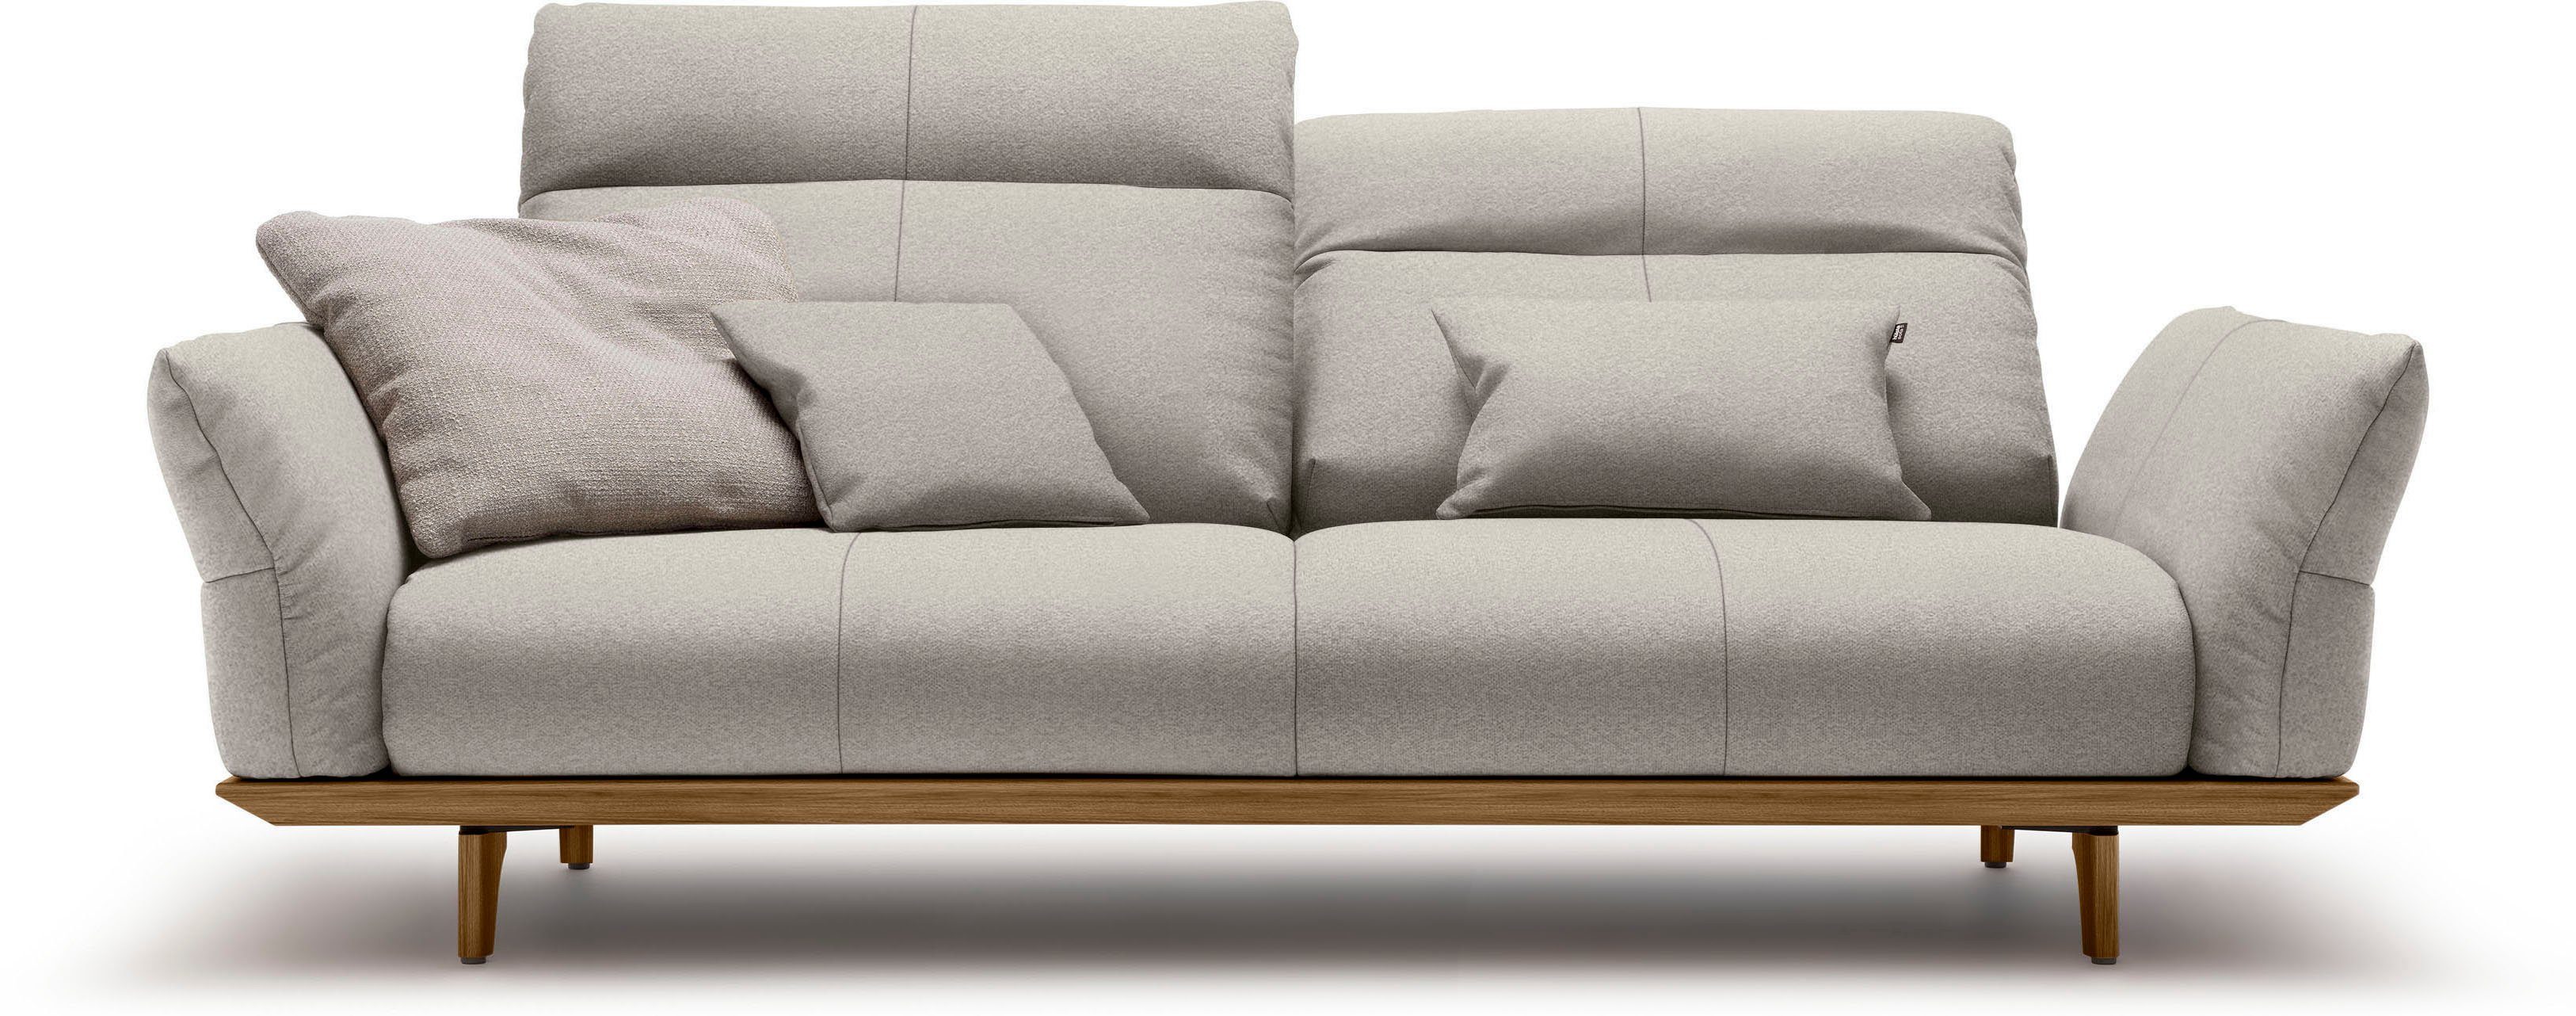 sofa Füße 3-Sitzer hülsta hs.460, Sockel in Nussbaum, 208 Nussbaum, Breite cm